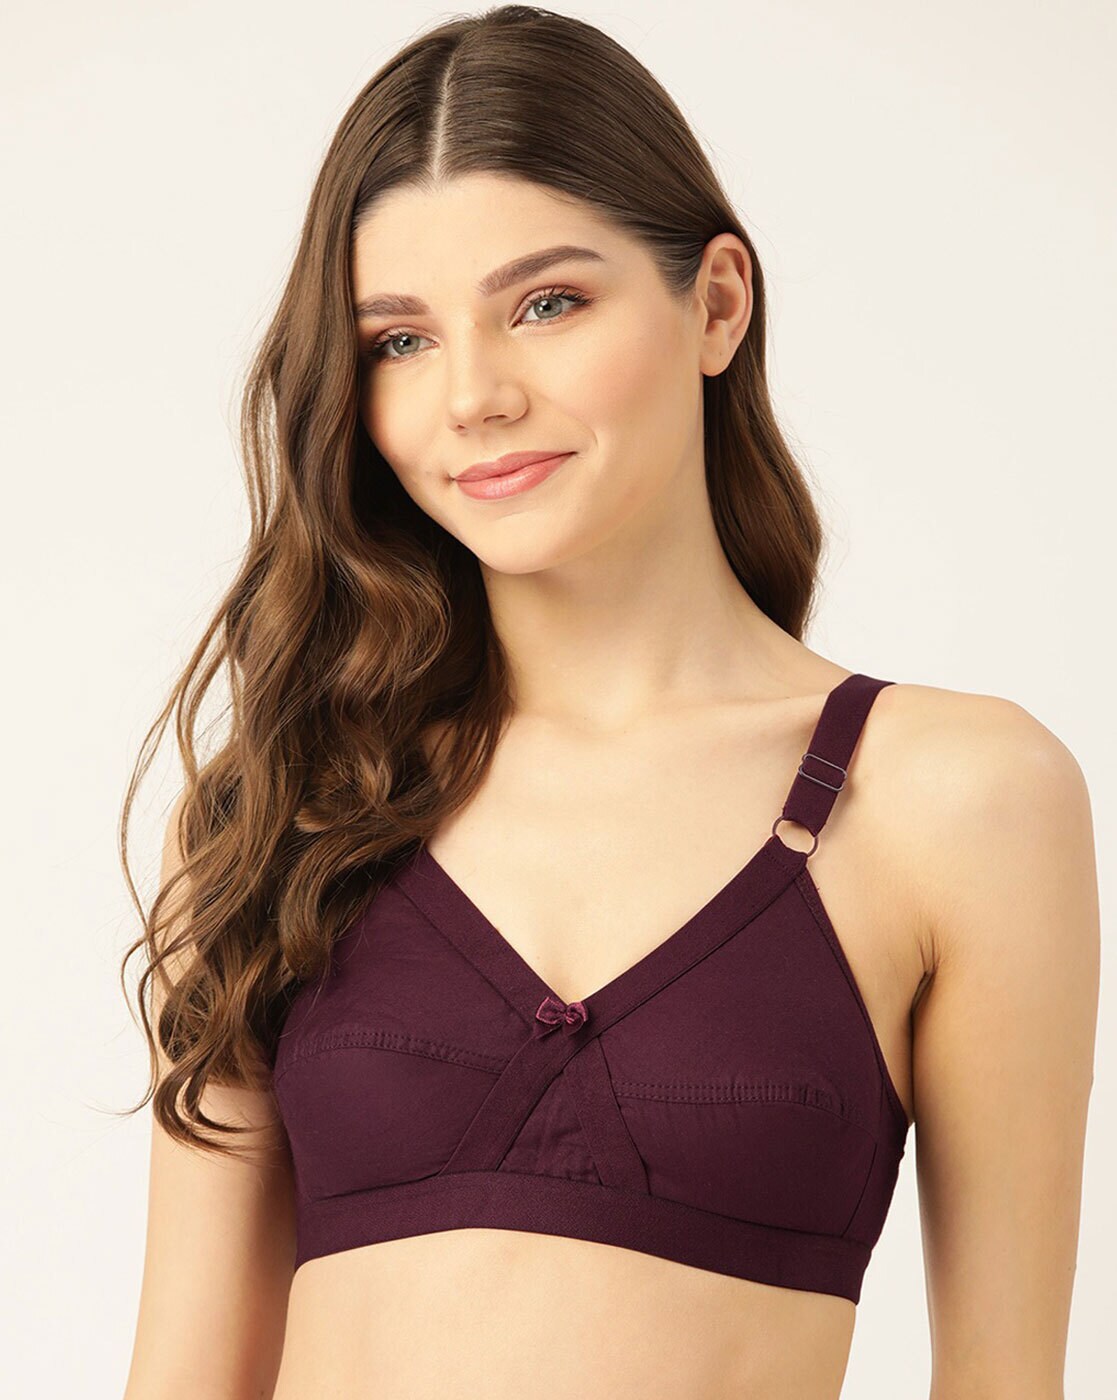 Buy Purple Bras for Women by Lady Lyka Online